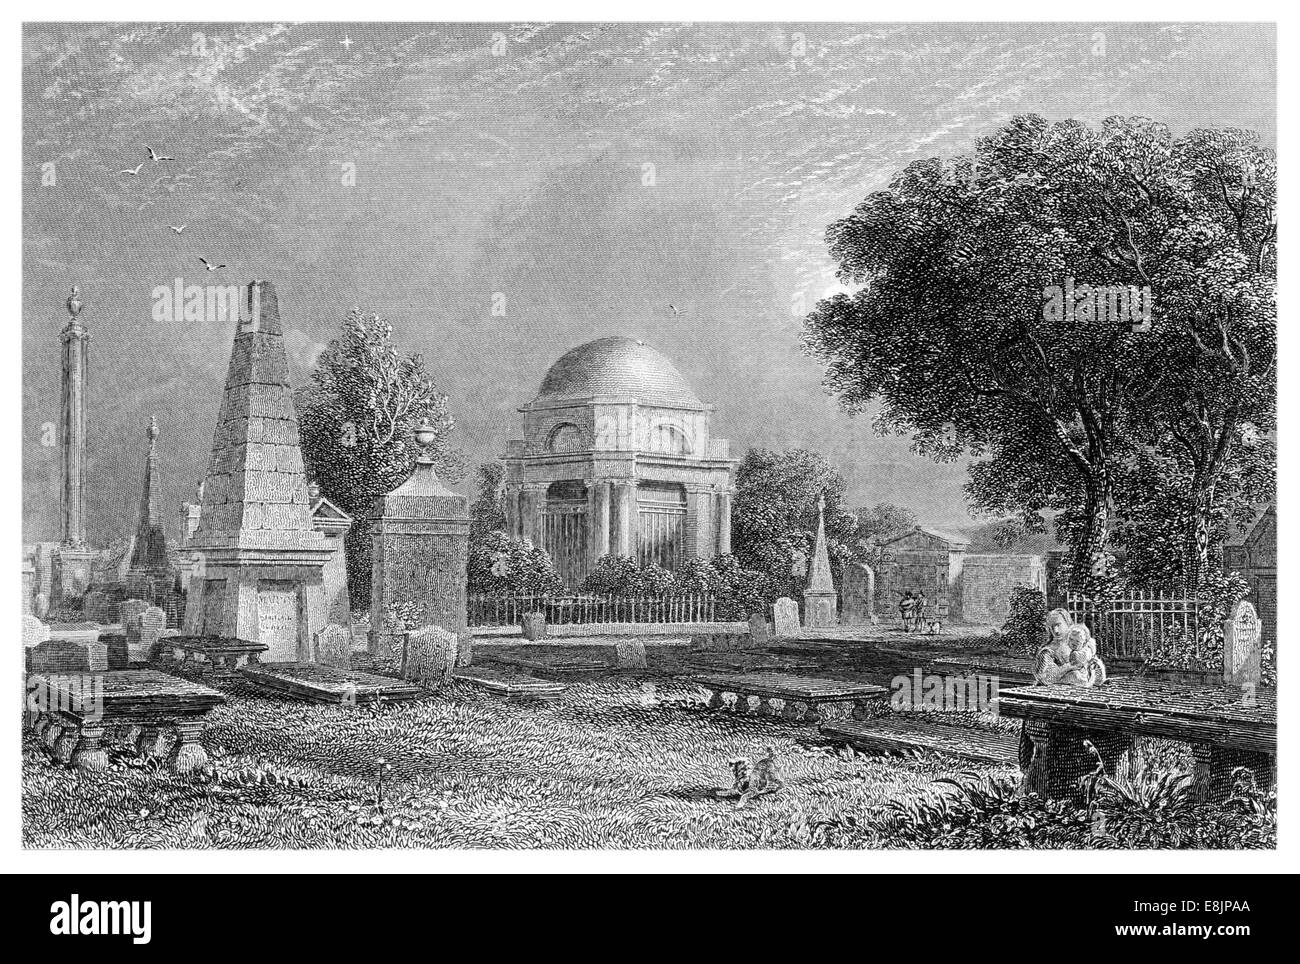 El Mausoleo de Robert Burns, Dumfries y Galloway, Escocia, circa 1860 Foto de stock